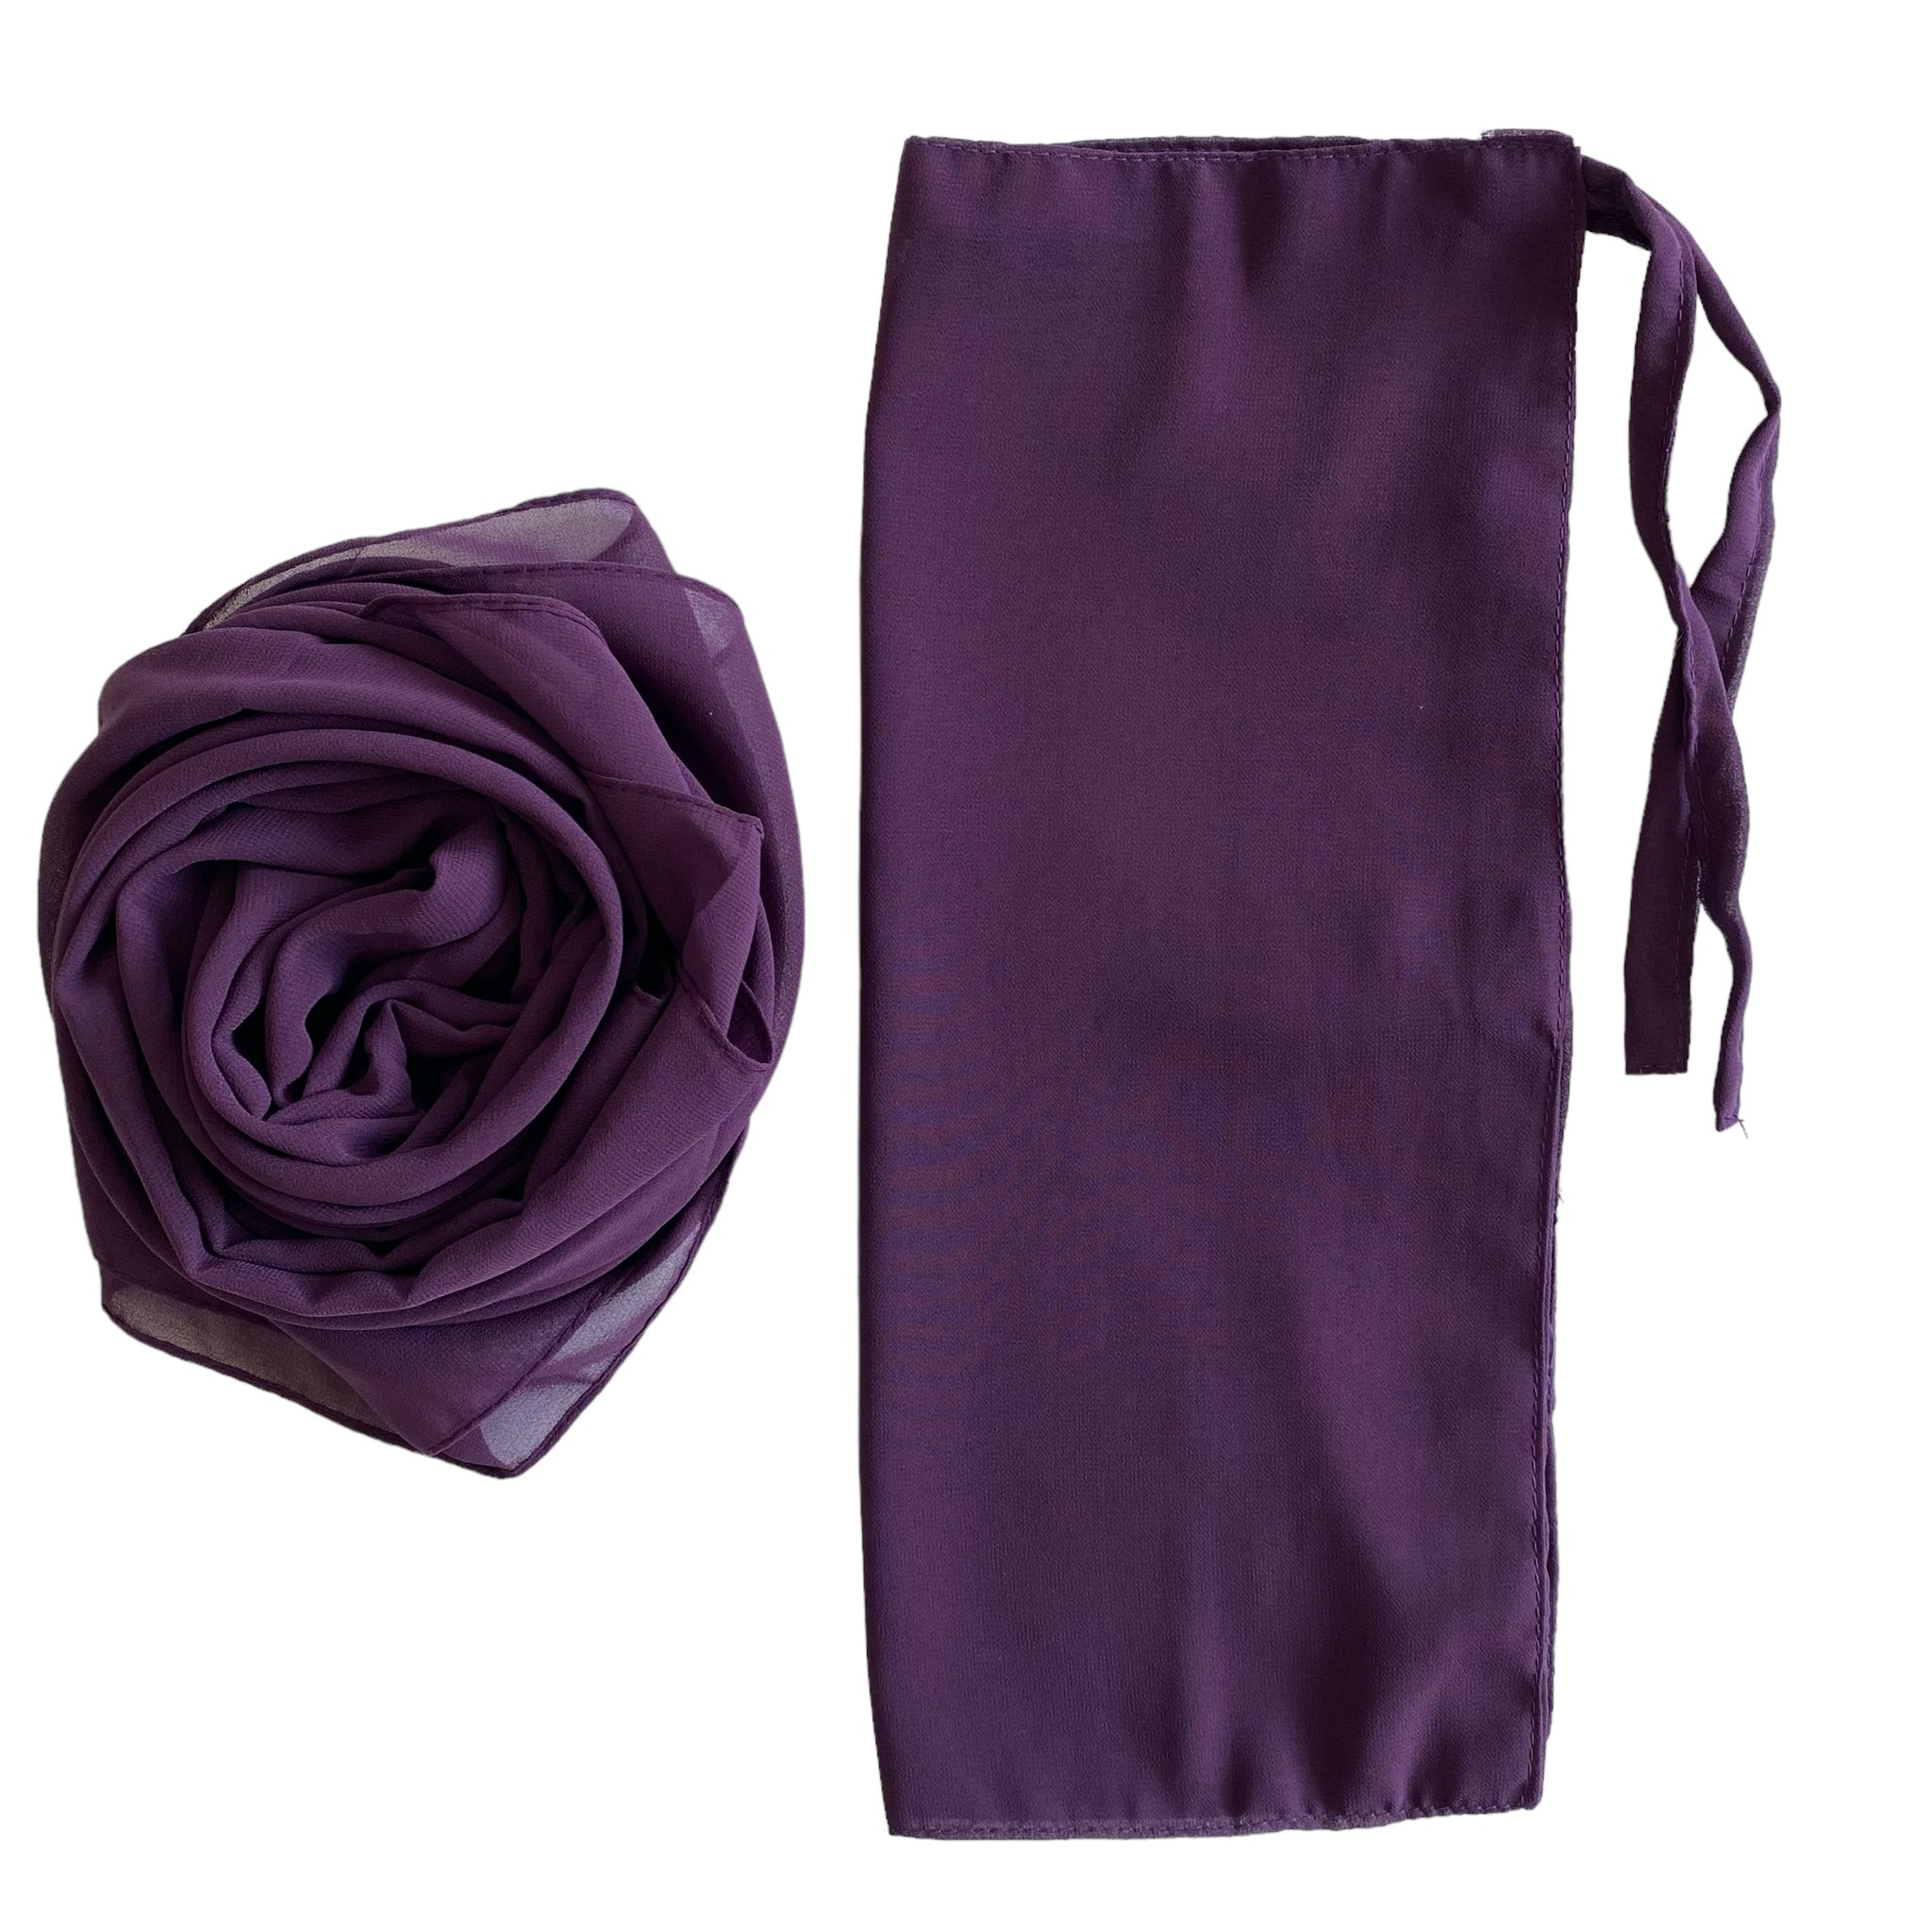 Matching Hijab & Niqab Sets - Royal Purple